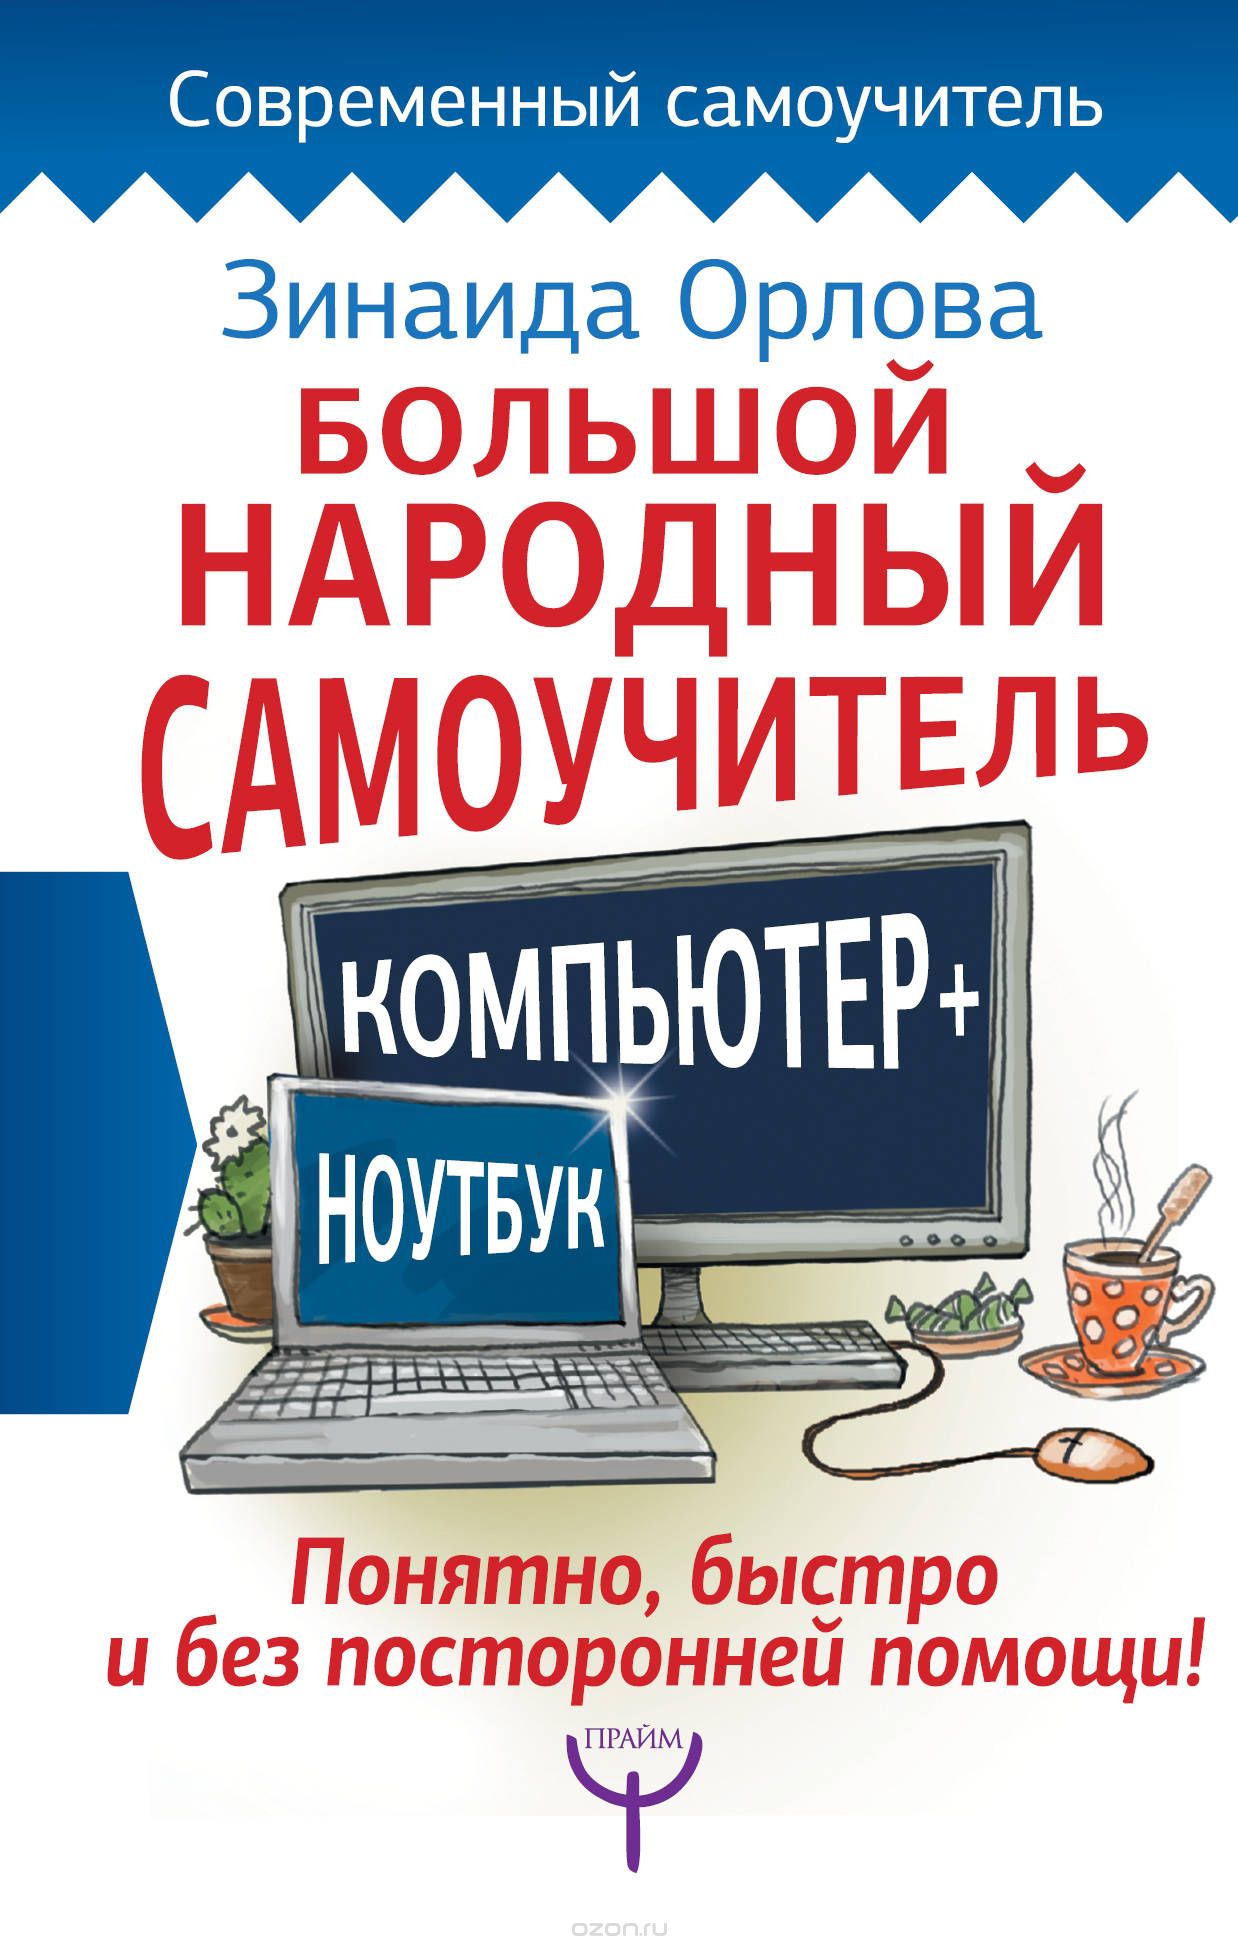 Скачать книгу "Большой народный самоучитель. Компьютер + ноутбук. Понятно, быстро и без посторонней помощи!, Зинаида Орлова"